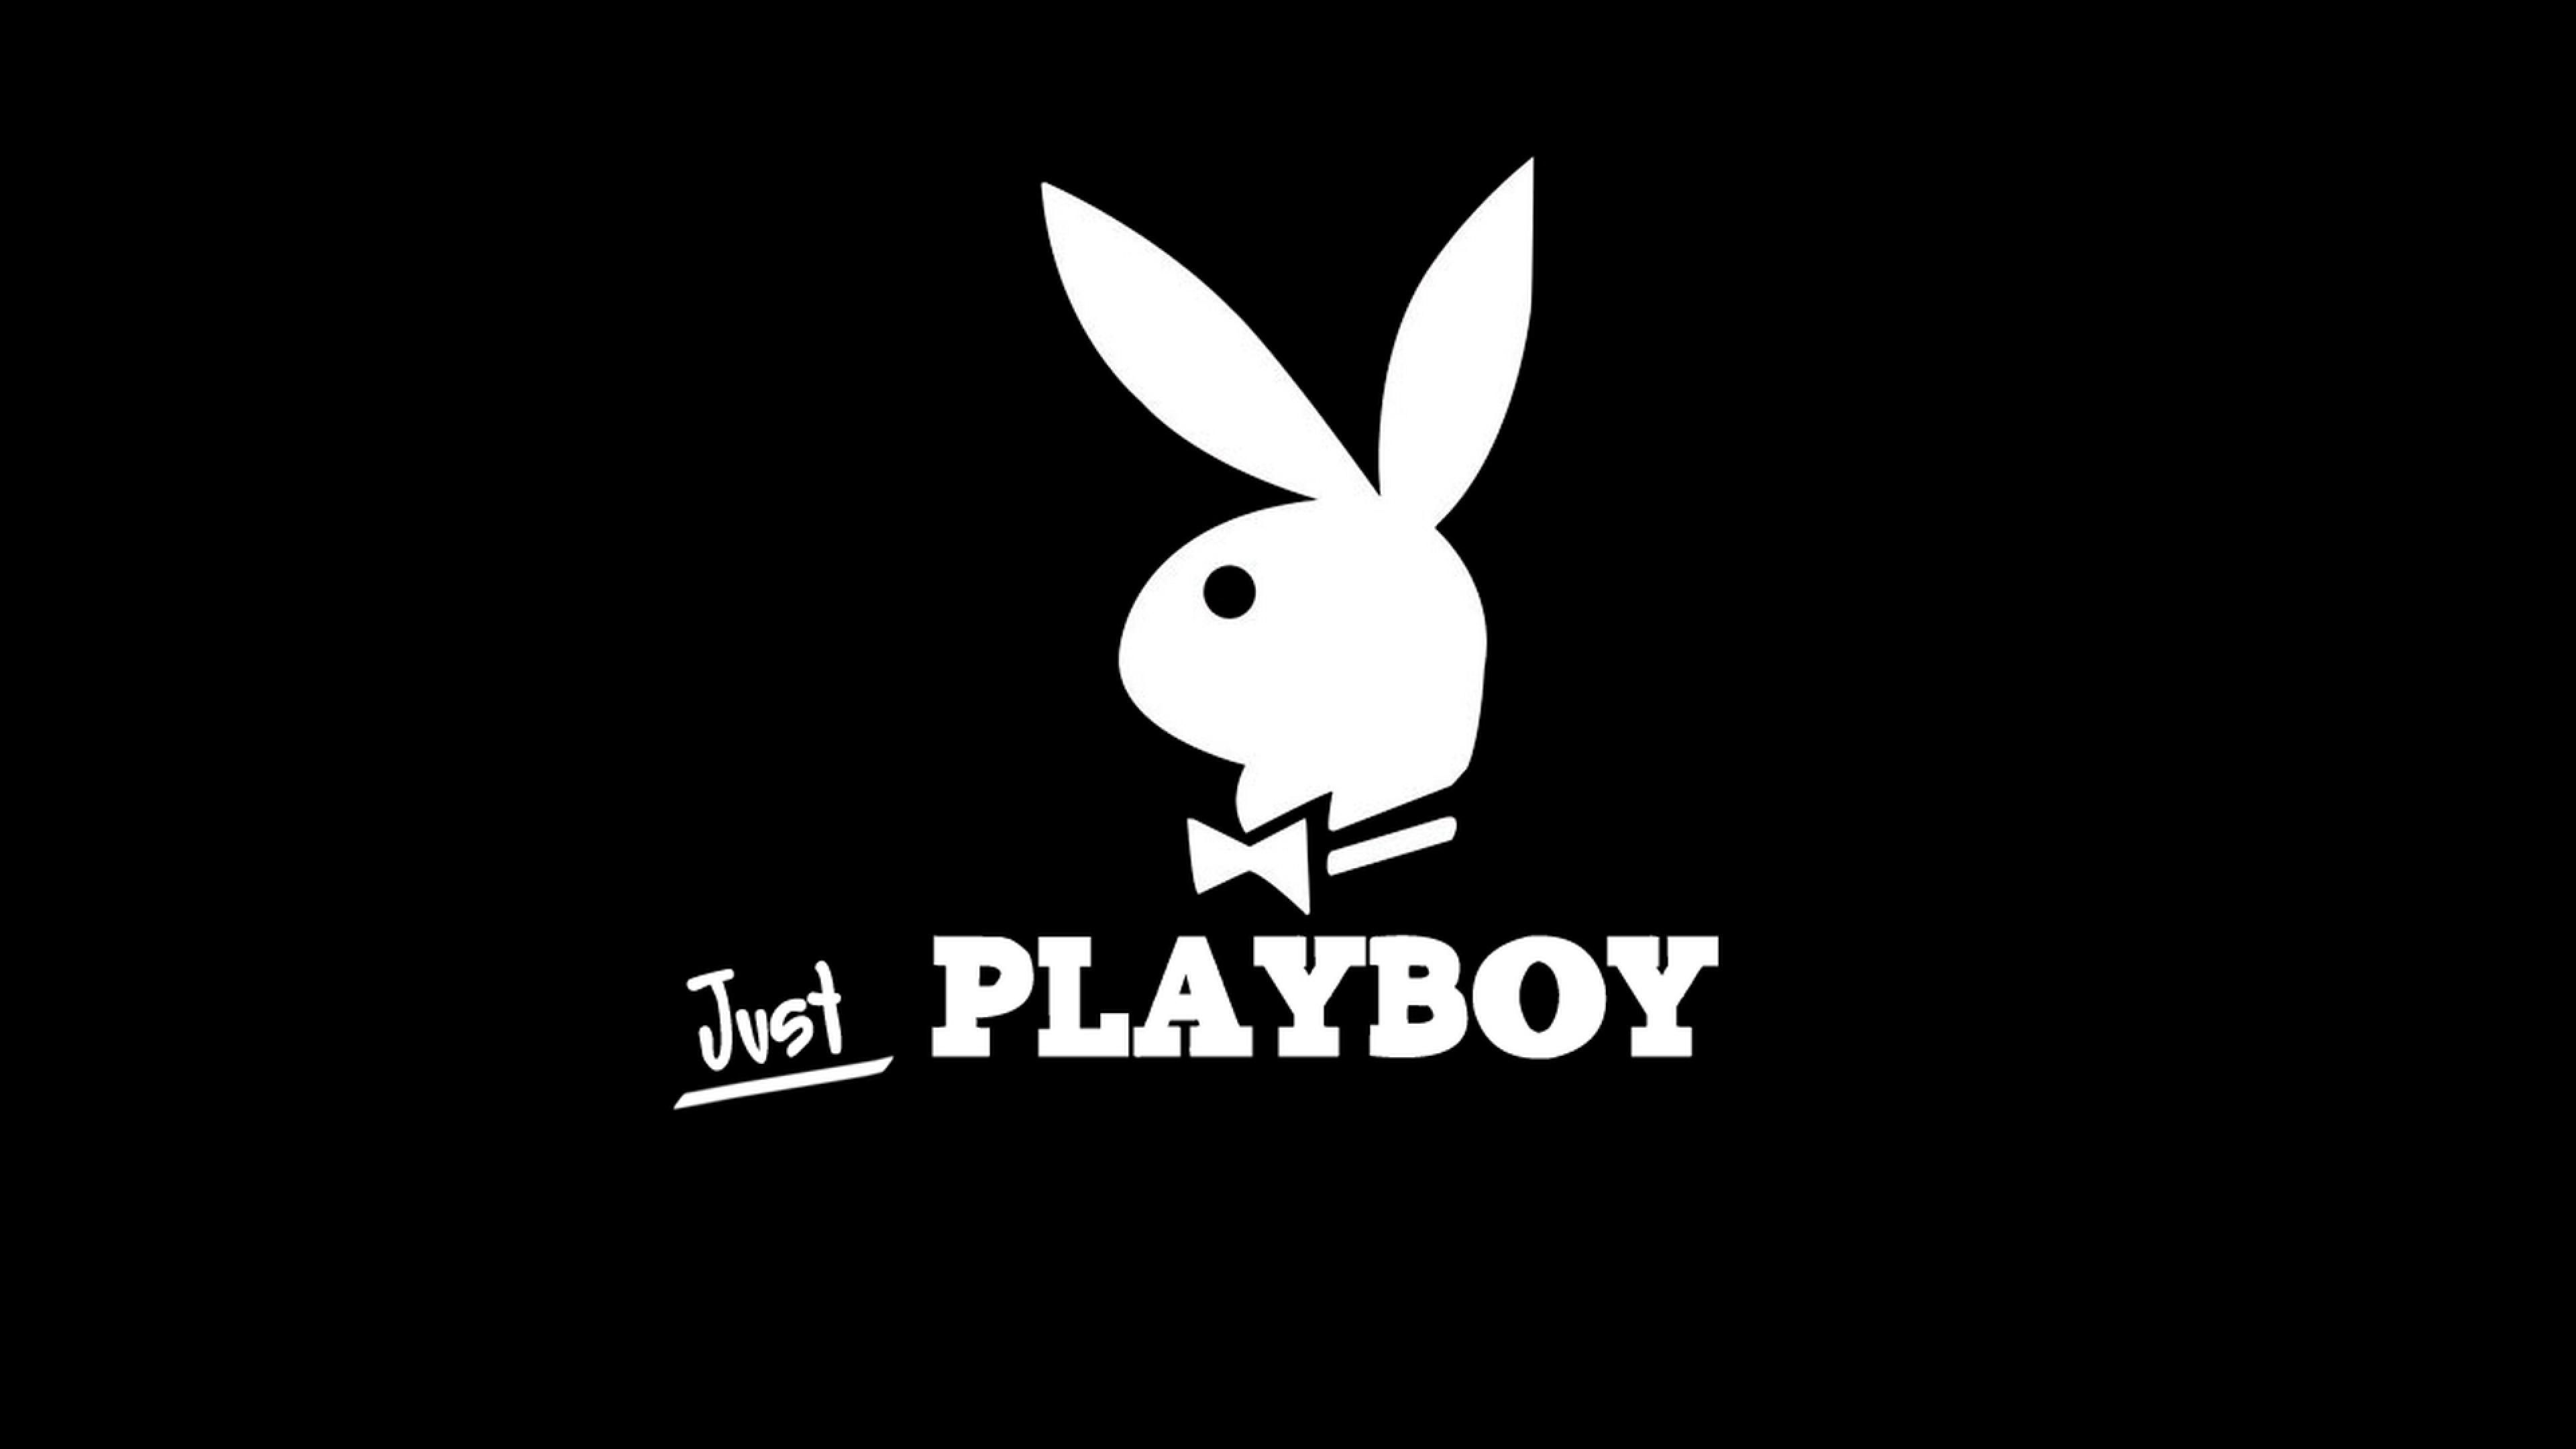 Как будет выглядеть новая обложка Playboy с обнаженными моделями: фото (18+)